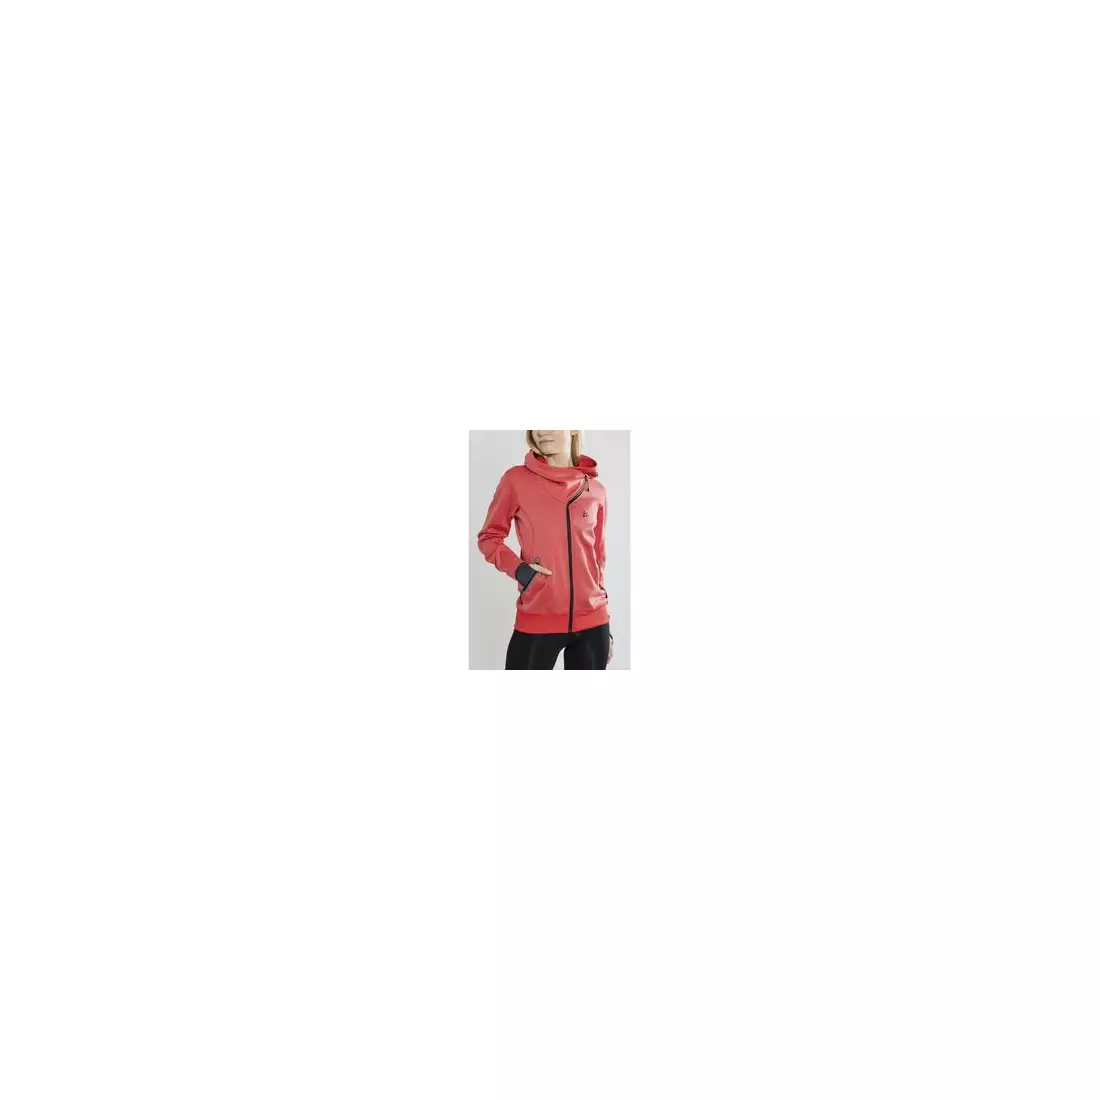 CRAFT SPORTS FLEECE ASSYMETRIC Damen Sport Sweatshirt rosa 1908010-48120000